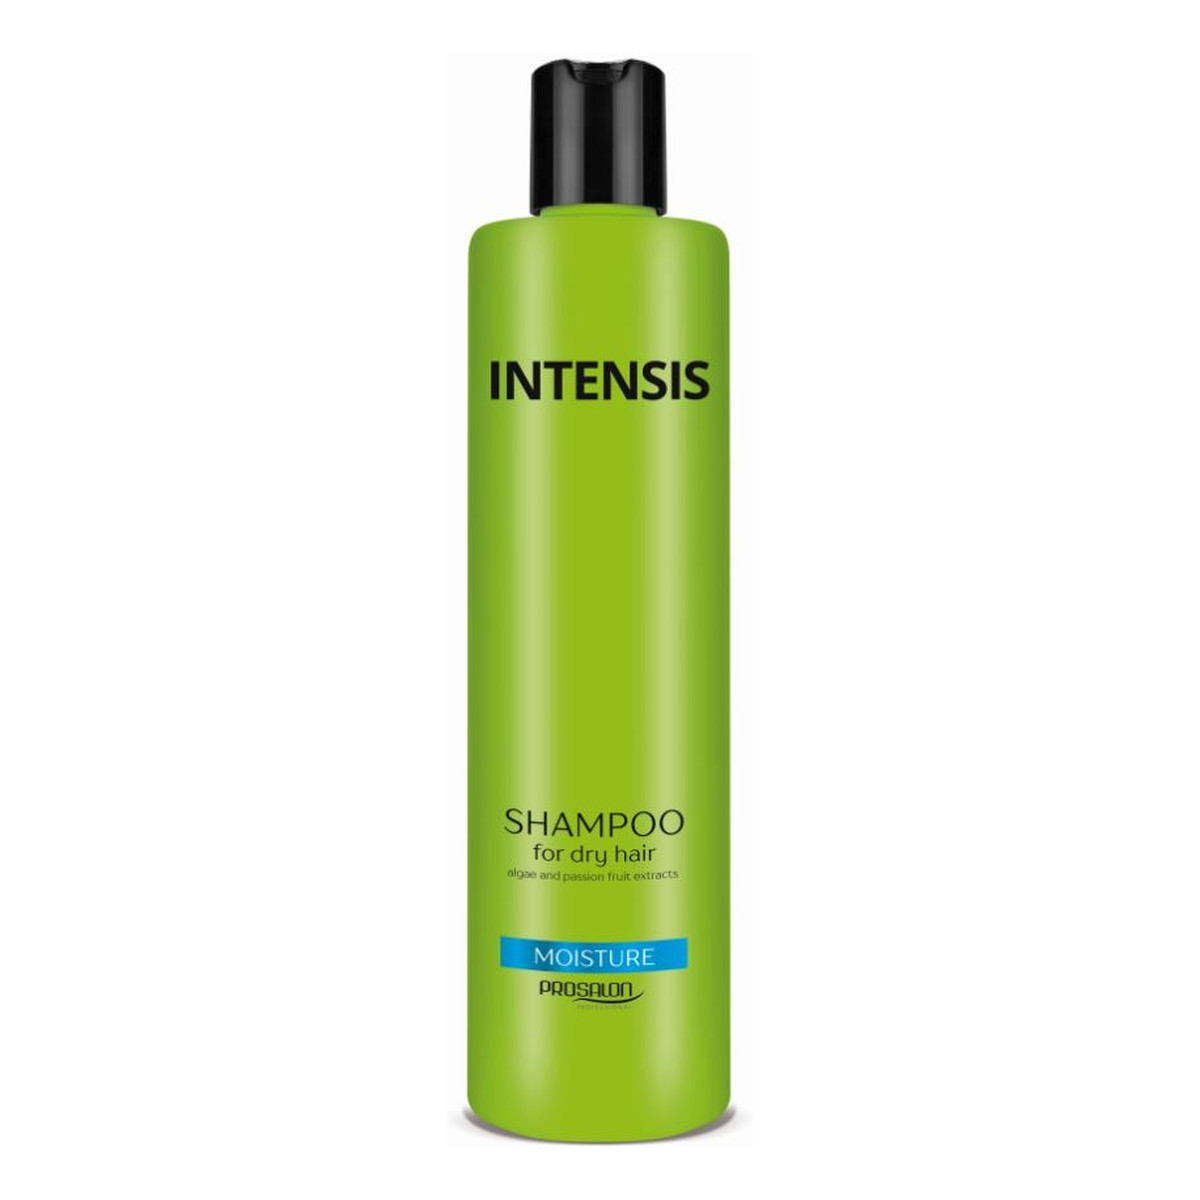 Chantal Profesional Prosalon szampon nawilżający do włosów suchych 300g